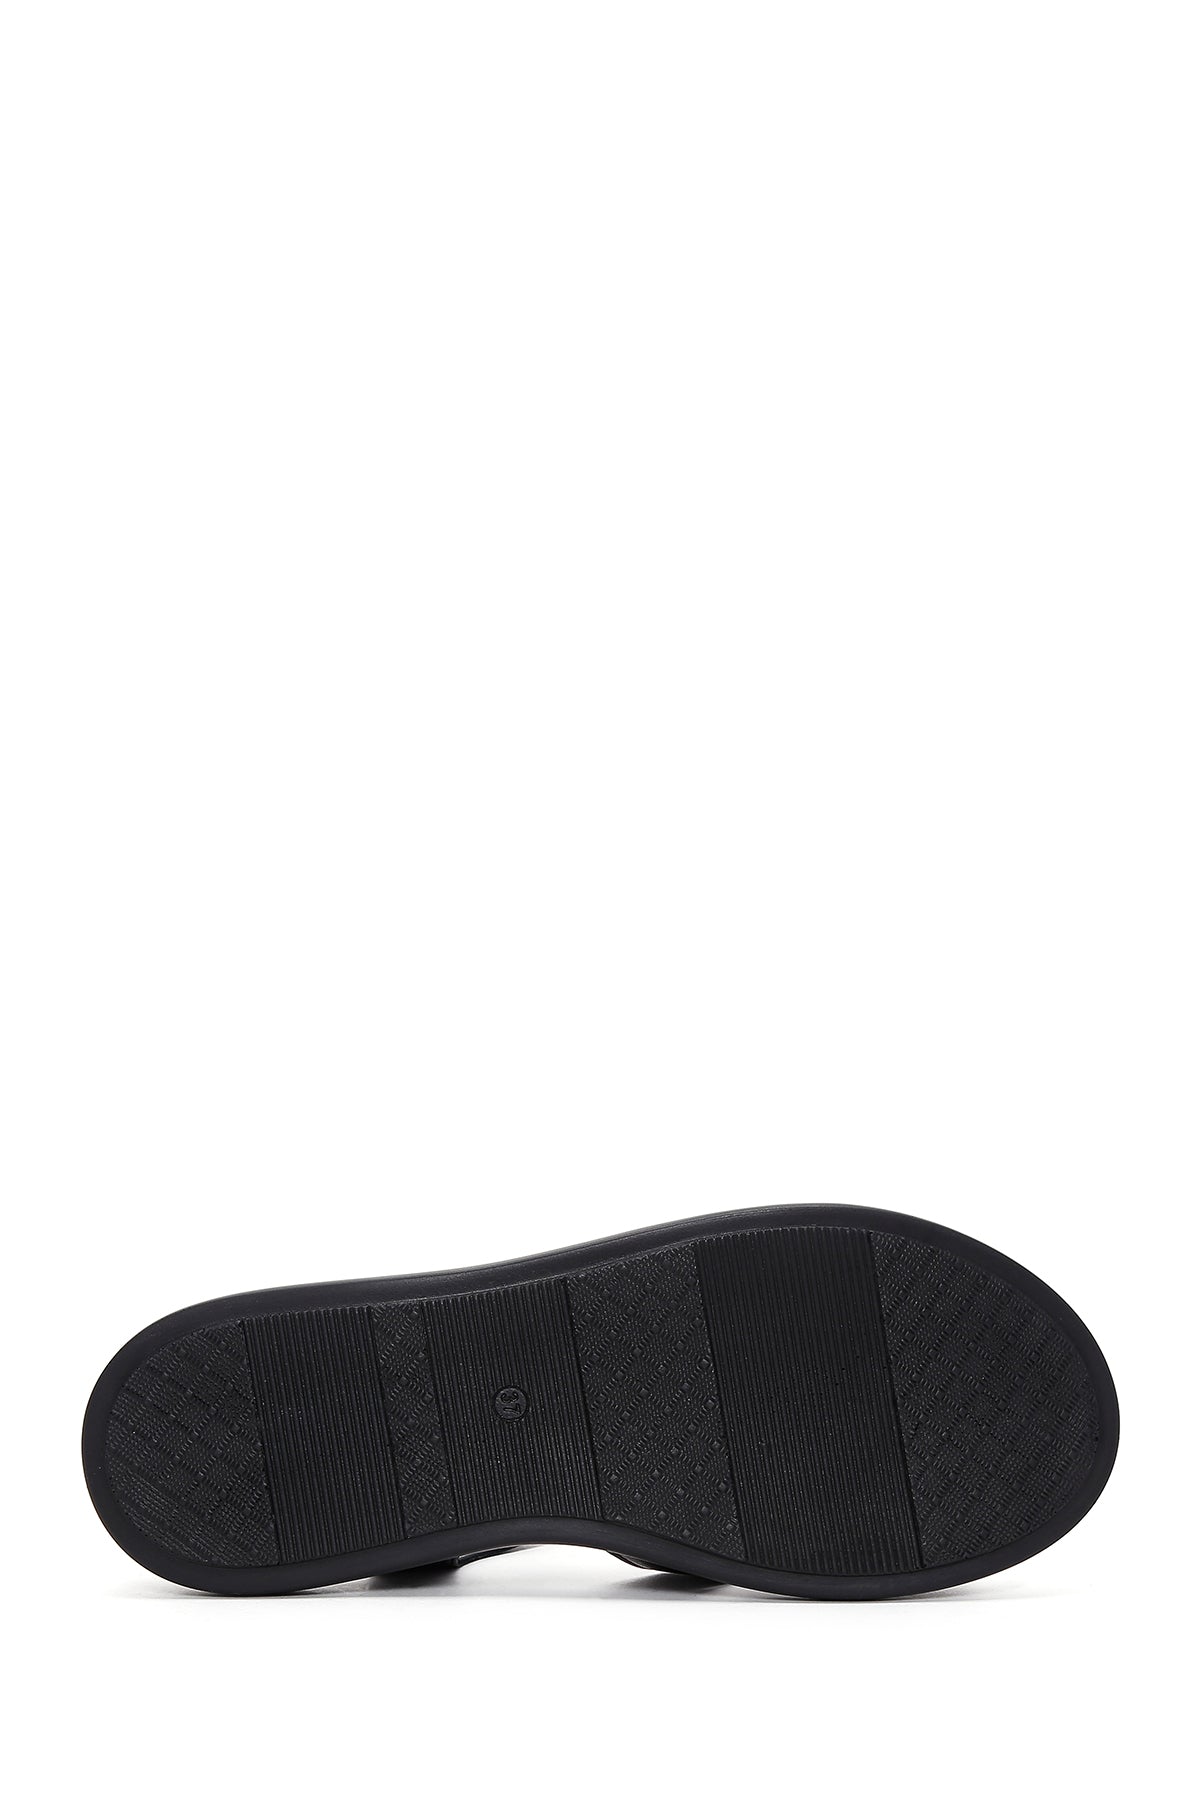 Kadın Siyah Çift Bantlı Deri Comfort Sandalet